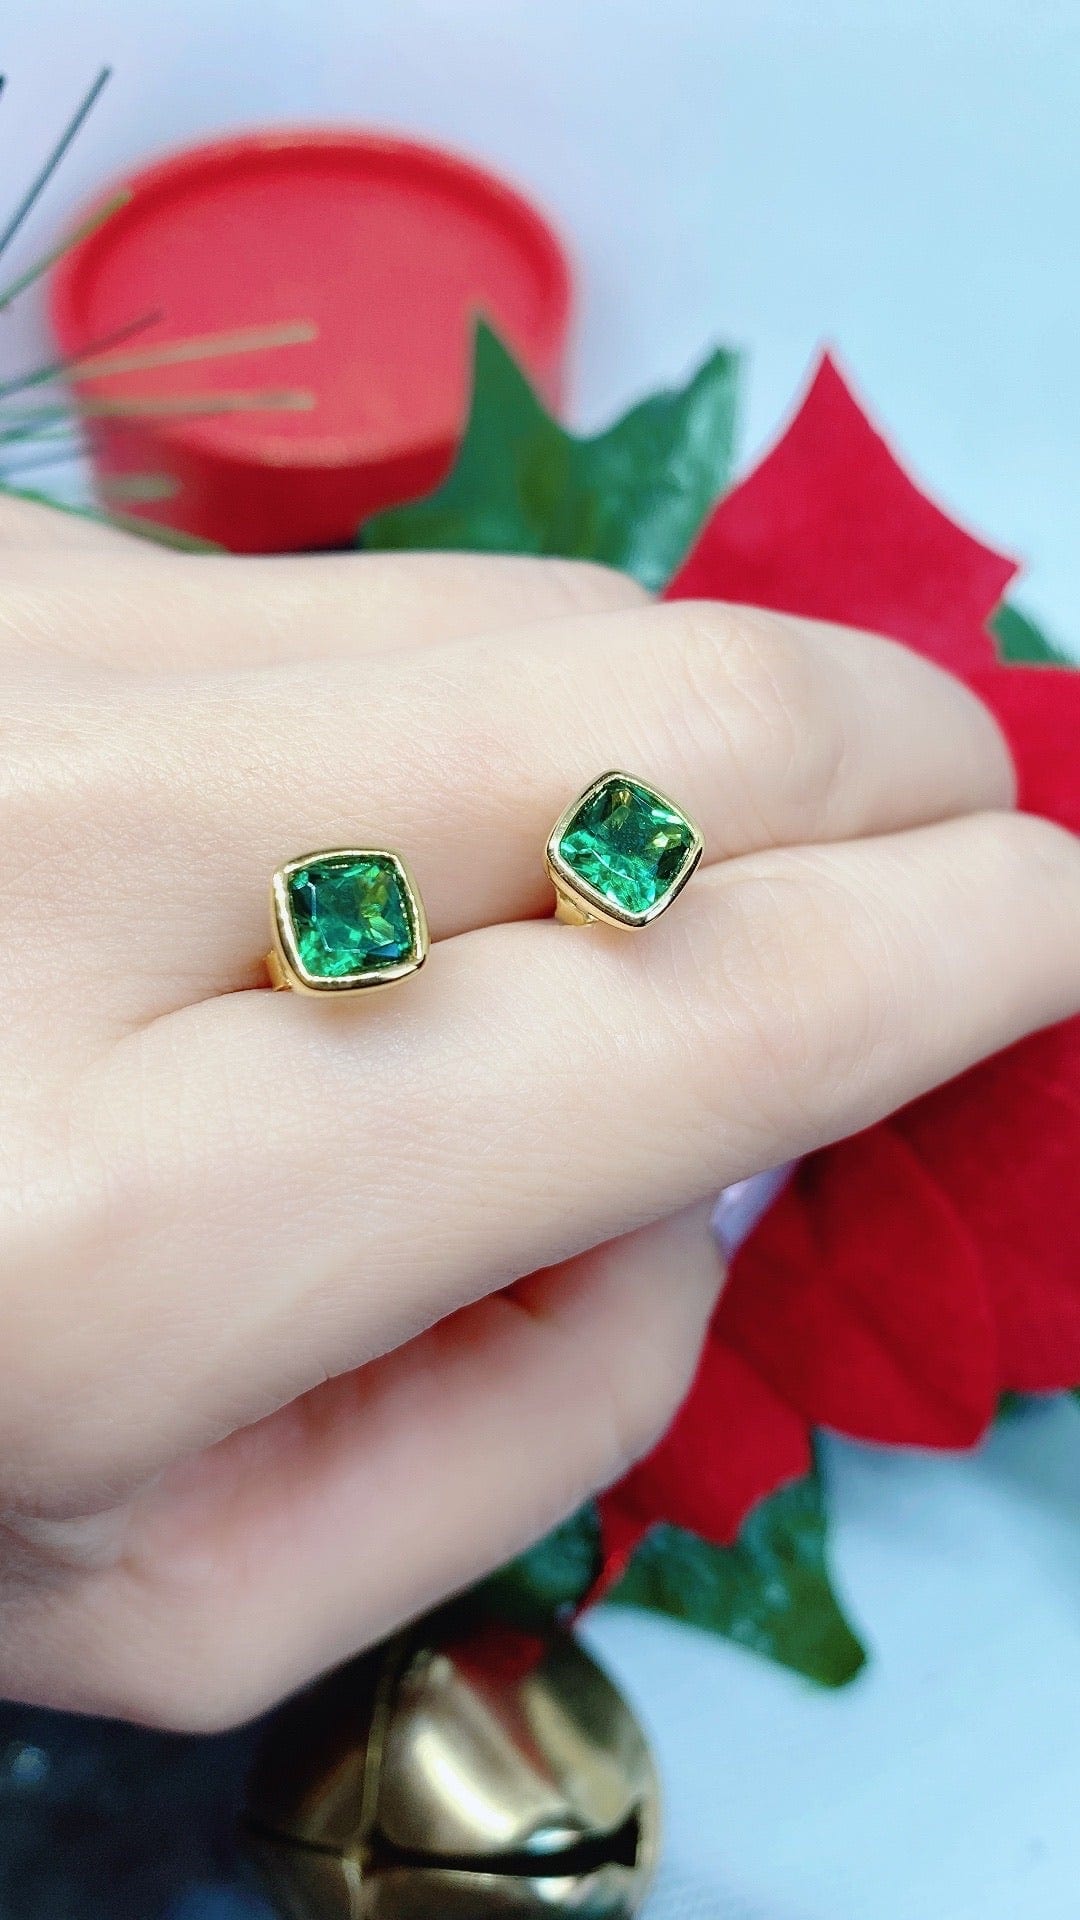 Bieauli Earrings Gold & Emerald Earrings - May birthstone